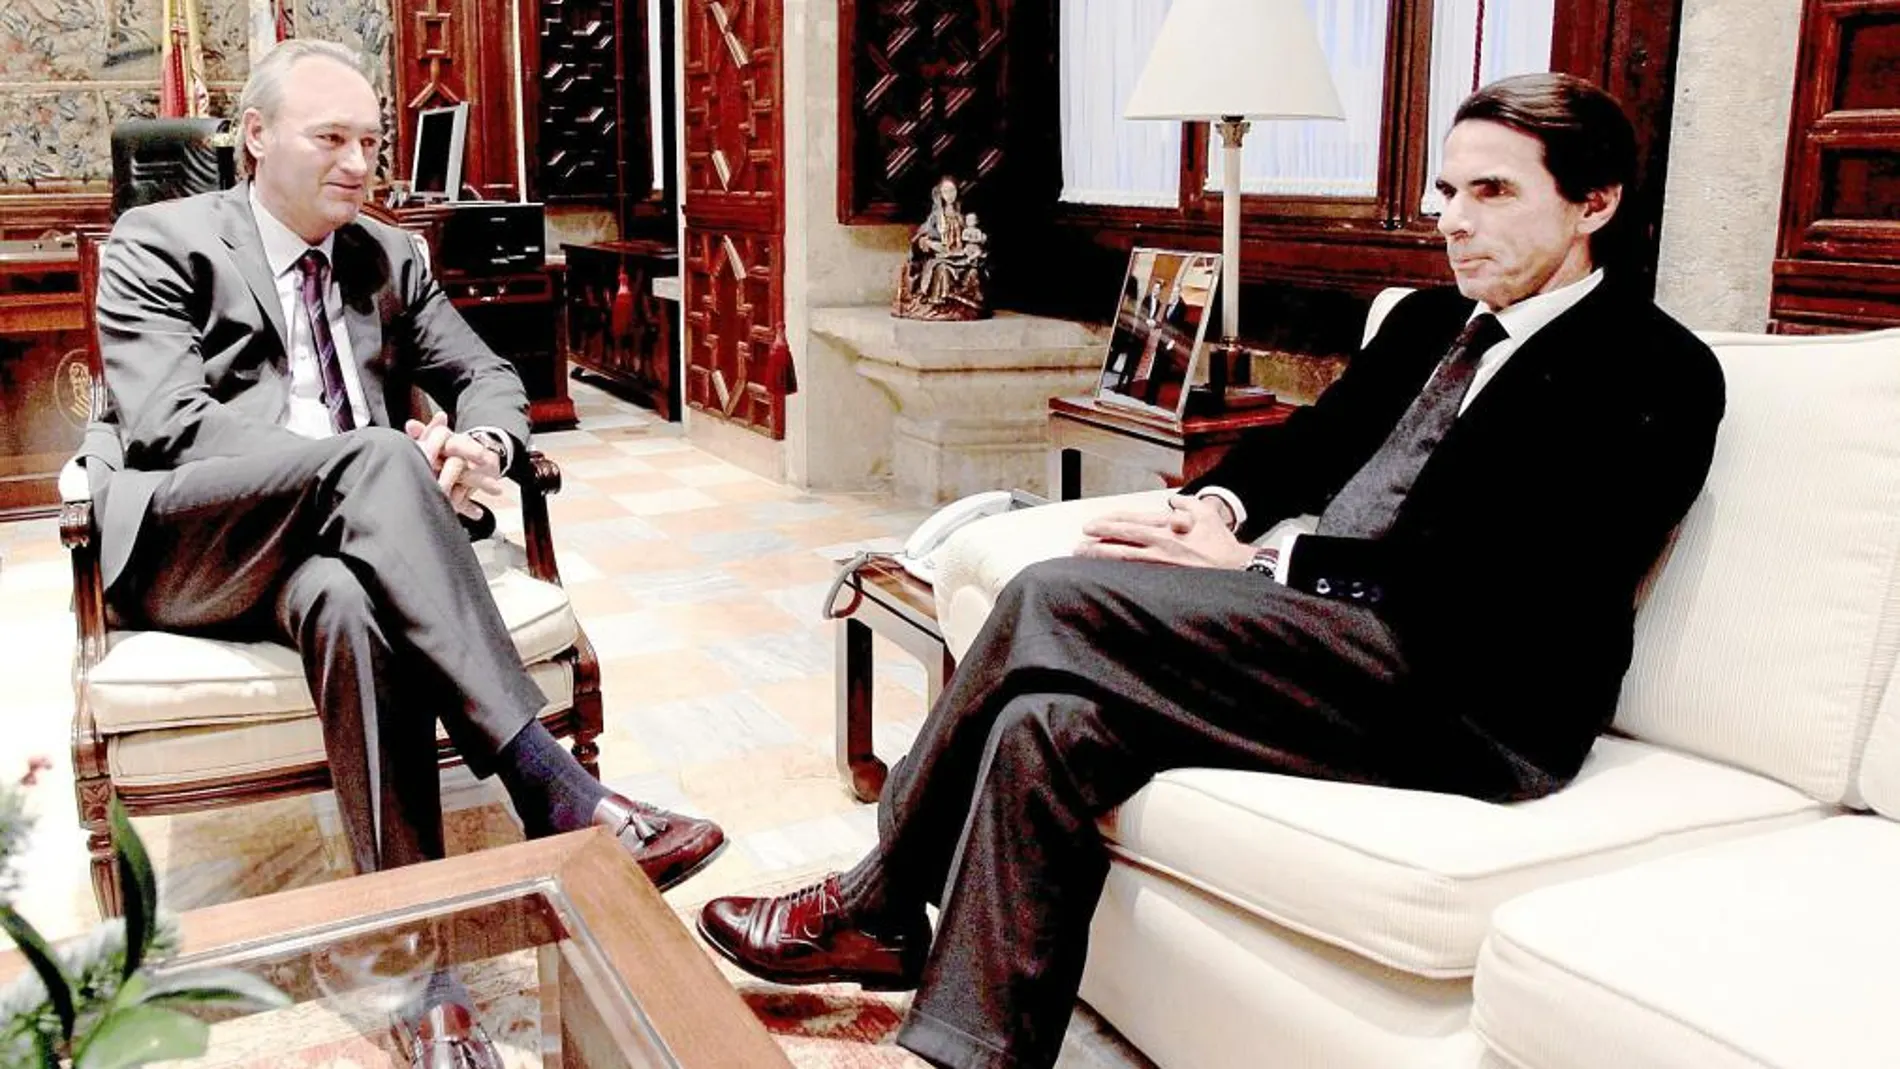 El presidente del Consell mantuvo ayer un encuentro privado con el ex presidente del Gobierno, José María Aznar